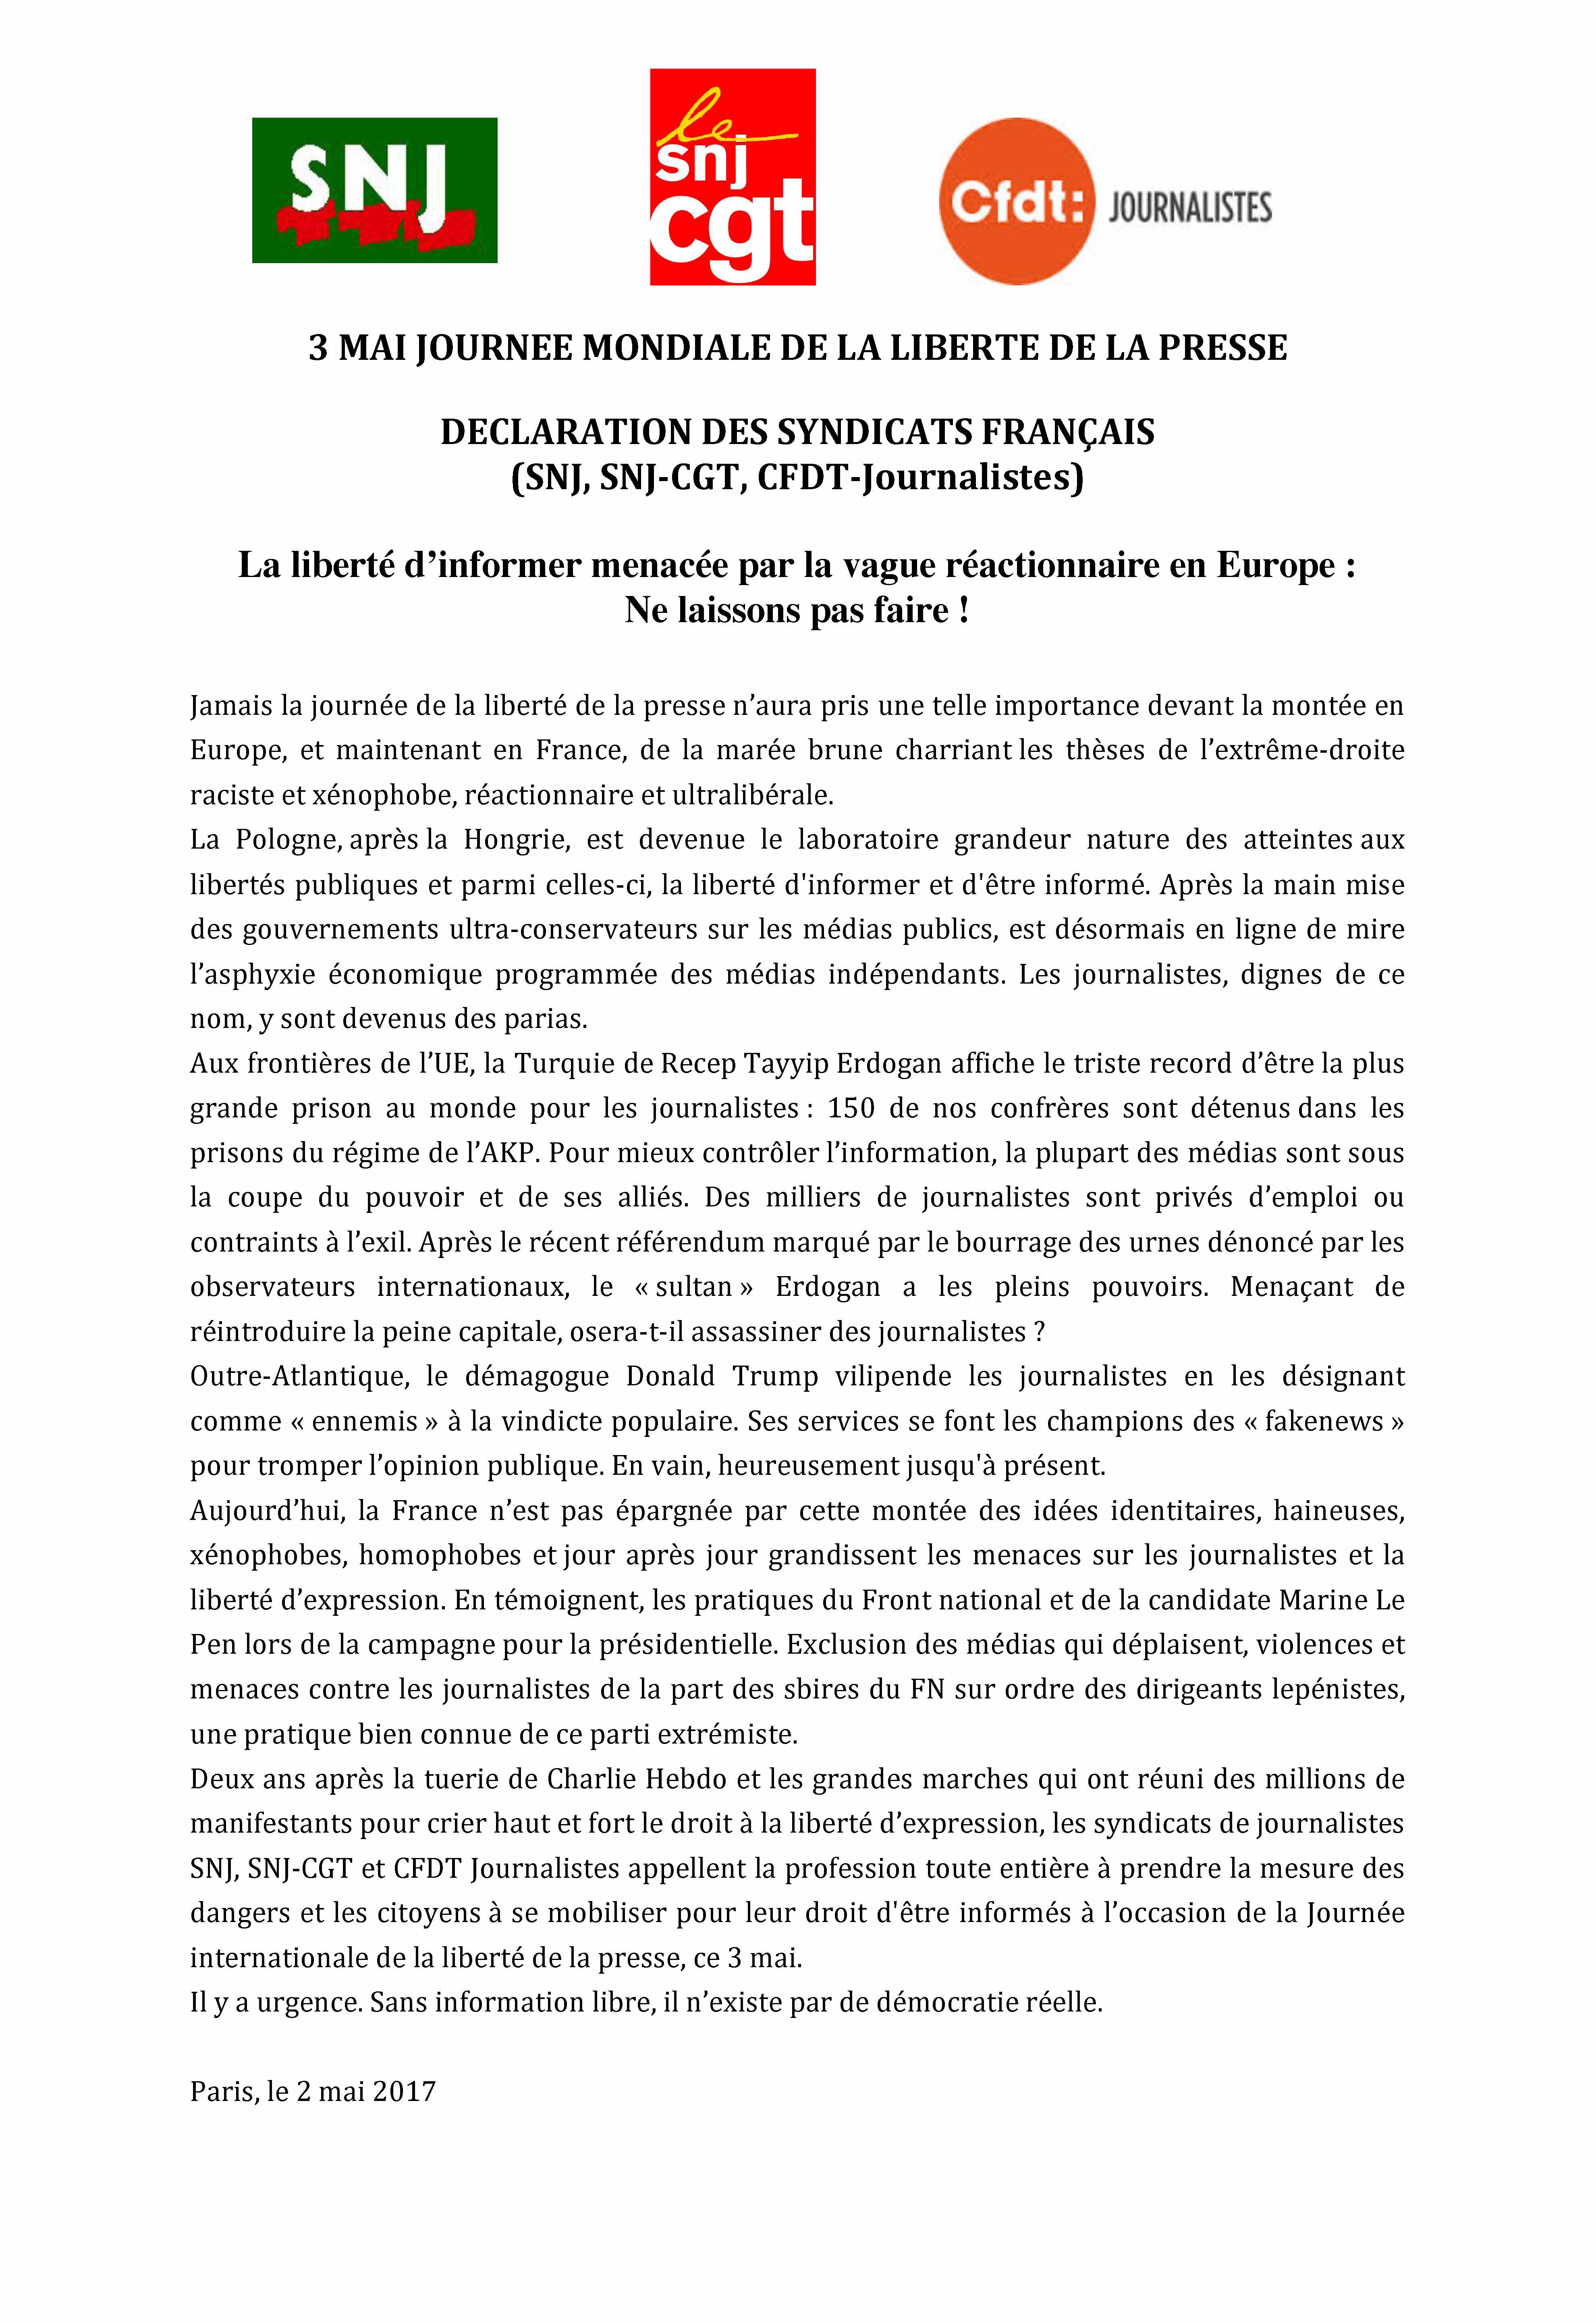 declaration-des-syndicats-franc%cc%a7ais-3-mai